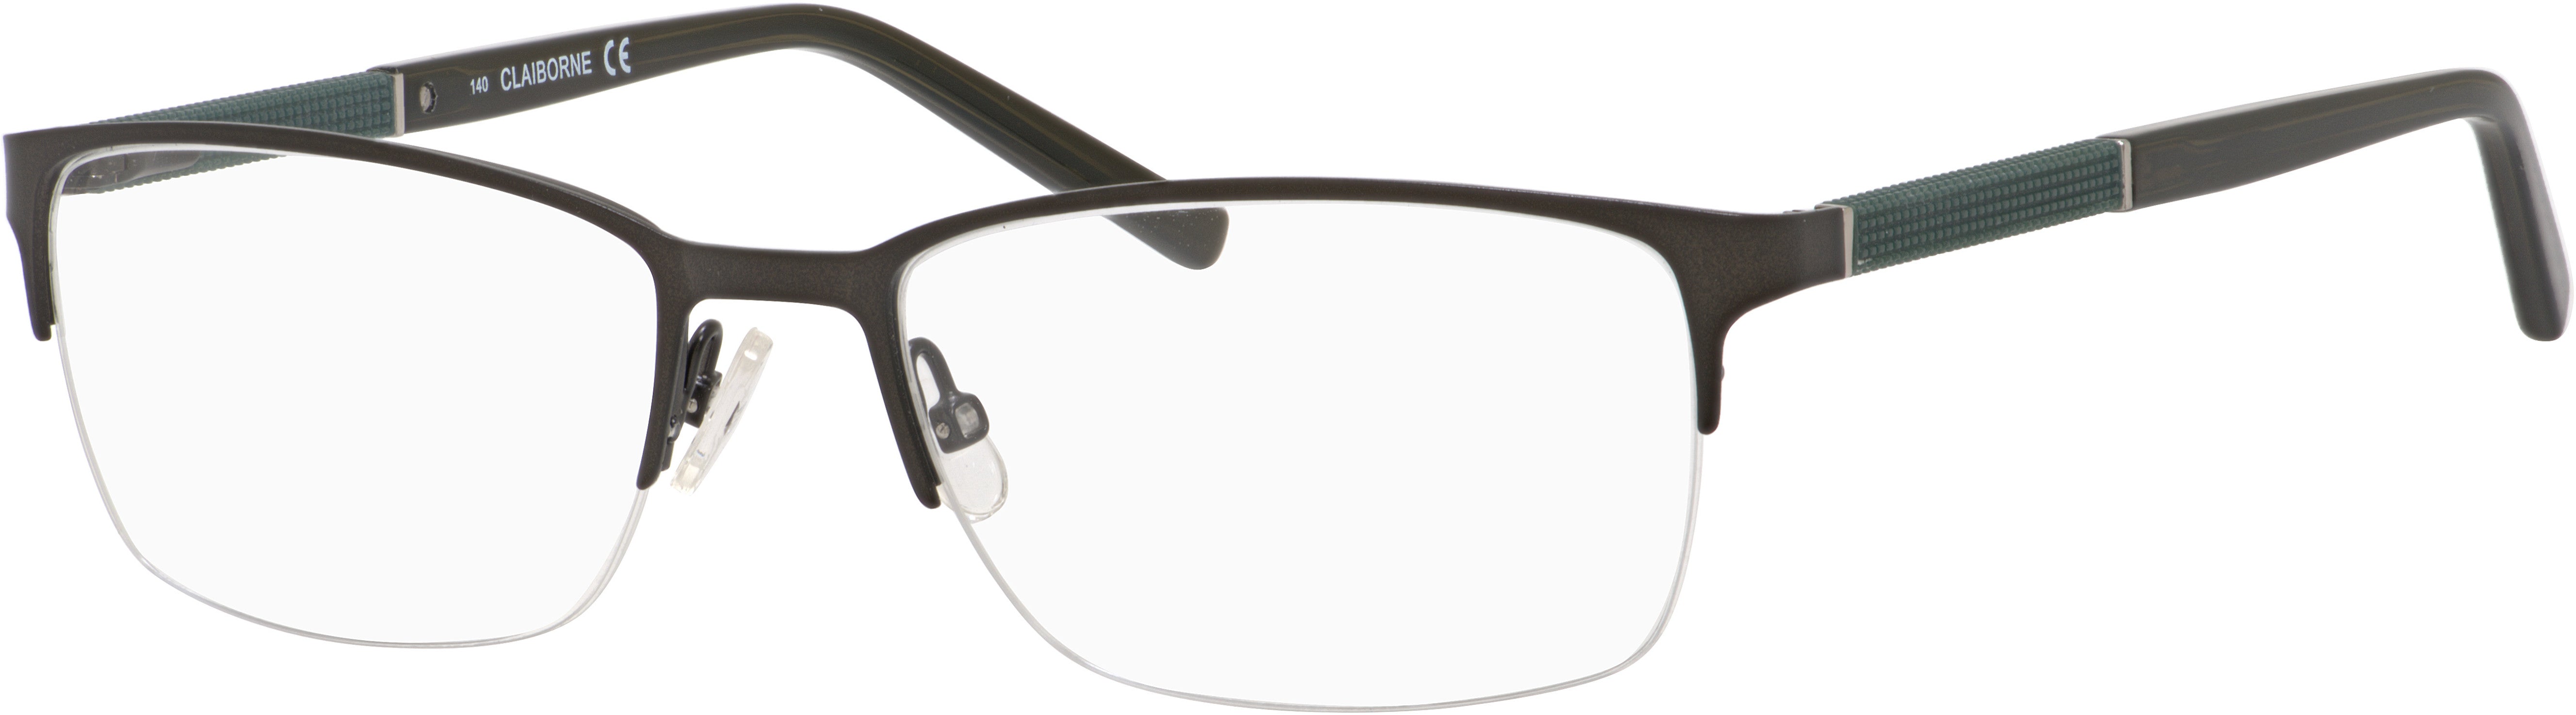  Claiborne 225 Rectangular Eyeglasses 0DT8-0DT8  Olive (00 Demo Lens)